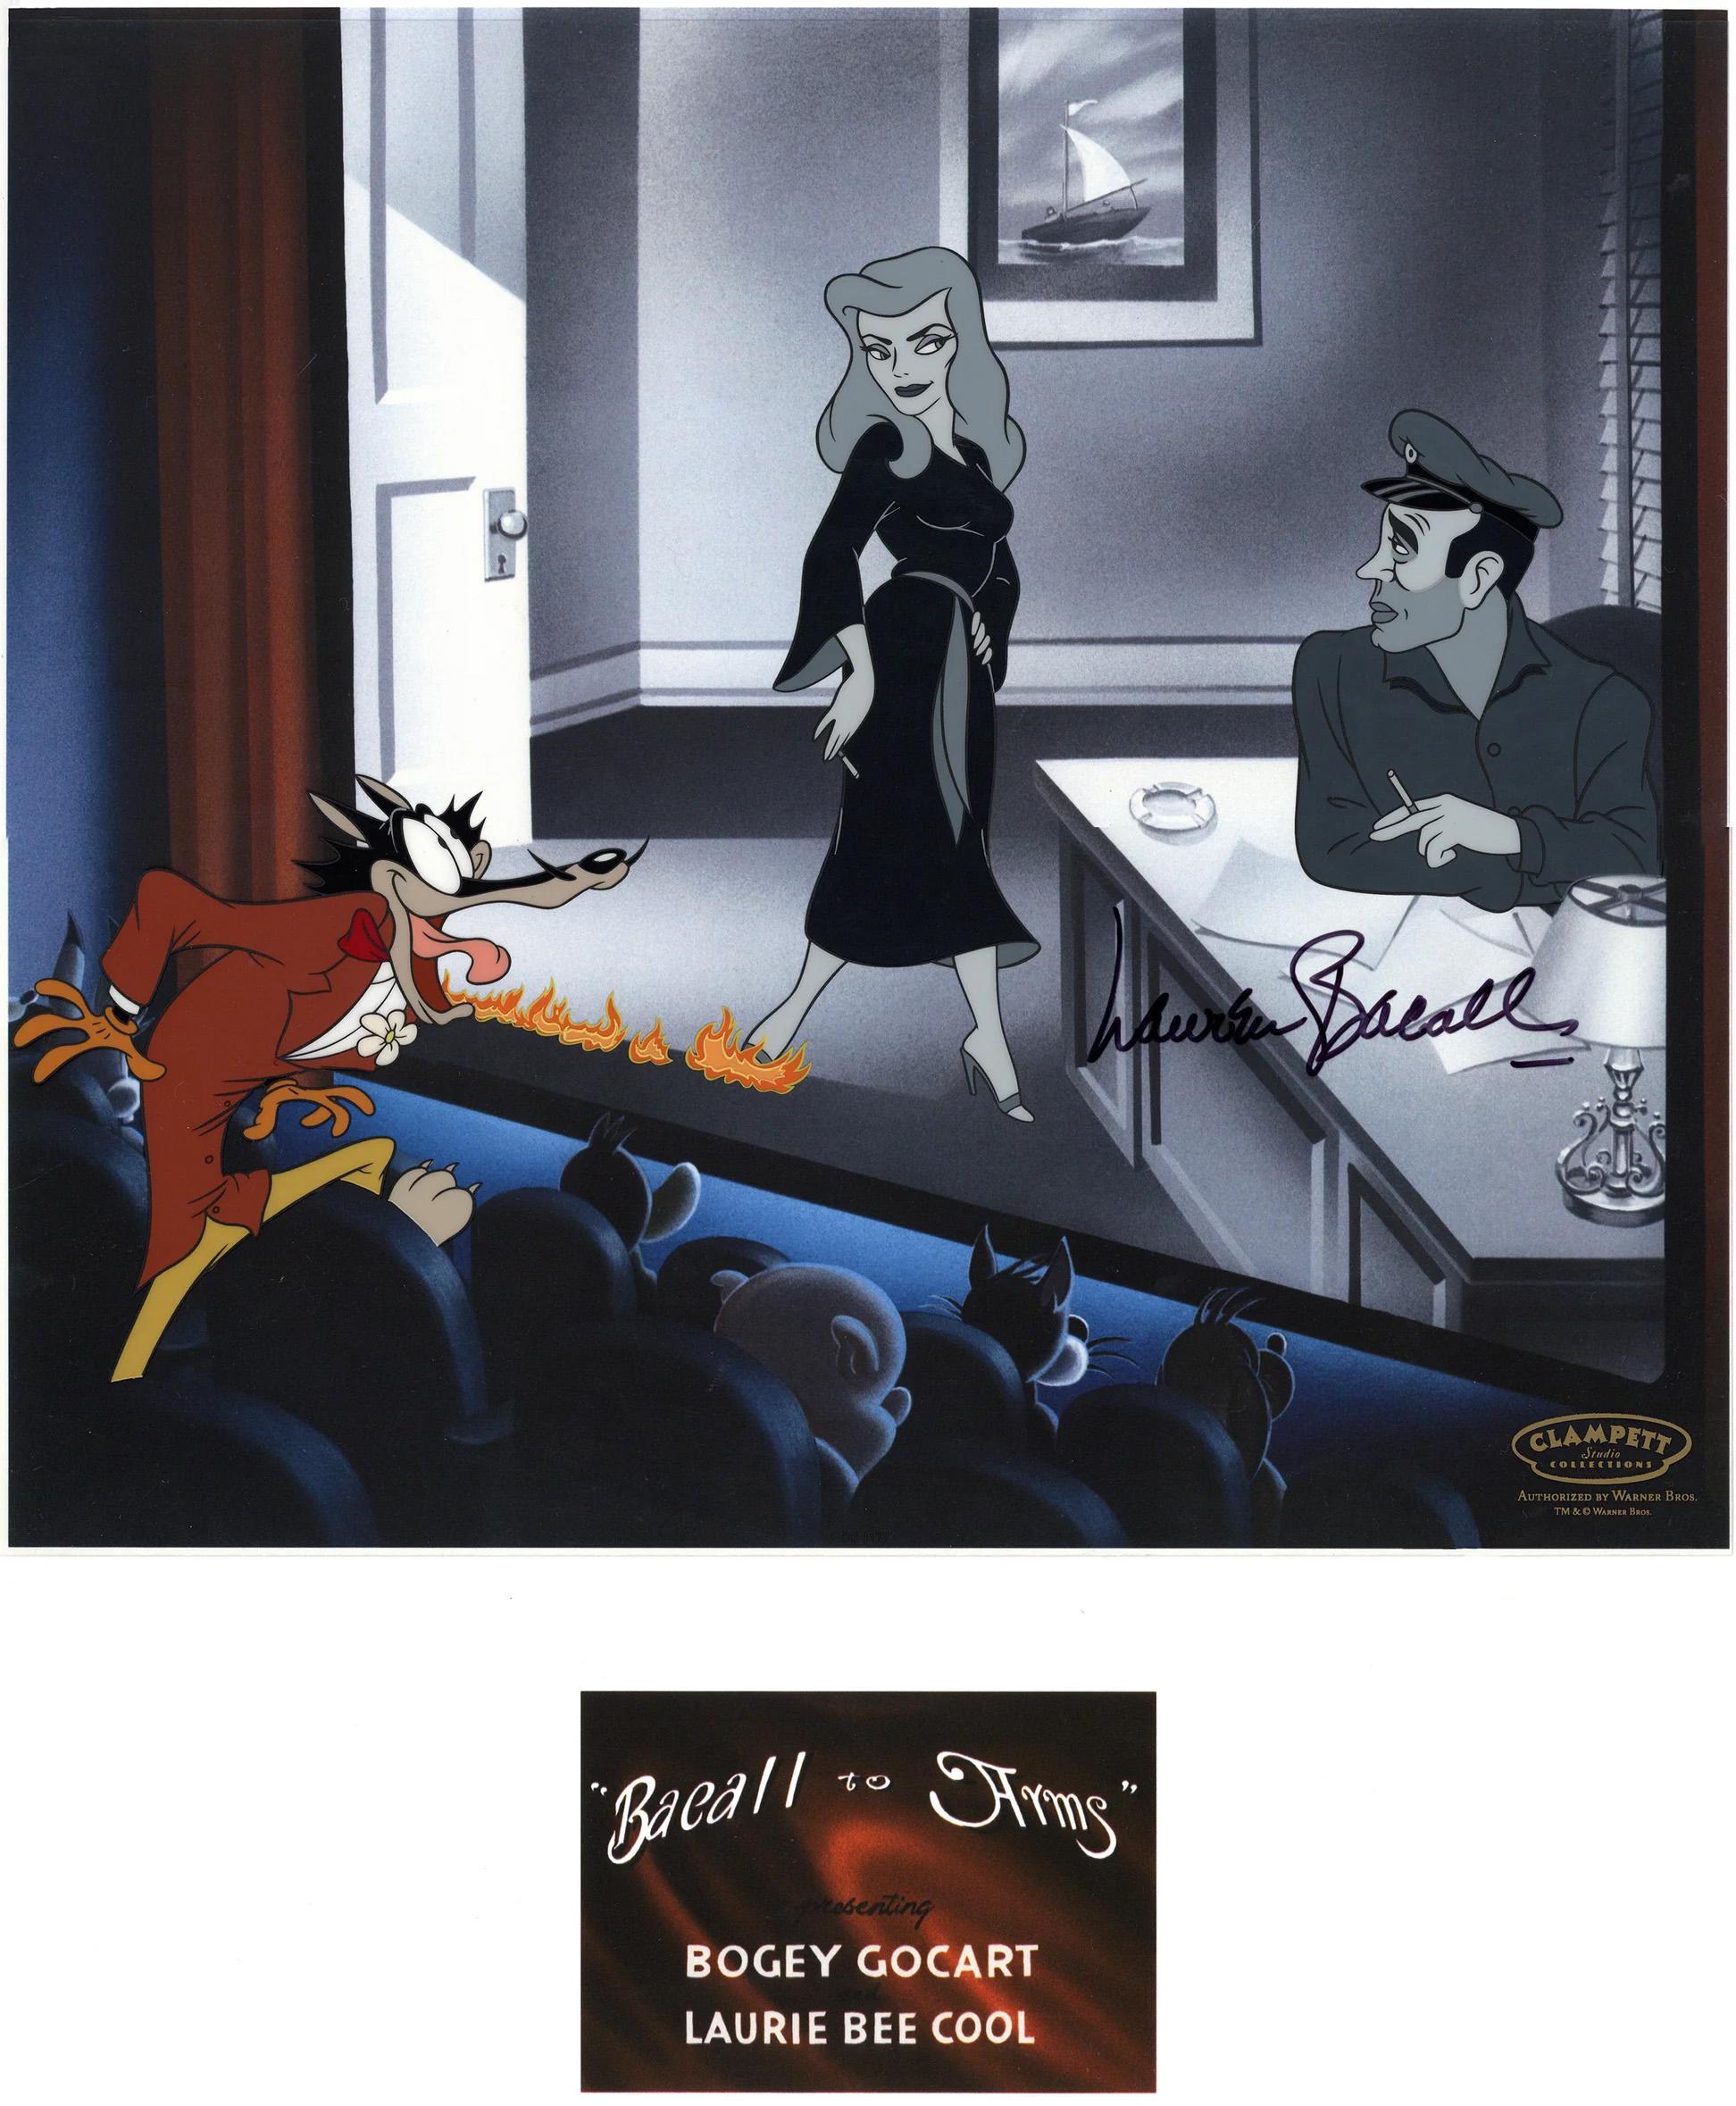 Bacall To Arms - Édition limitée Cel signée par Lauren Bacall - Art de Looney Tunes Studio Artists